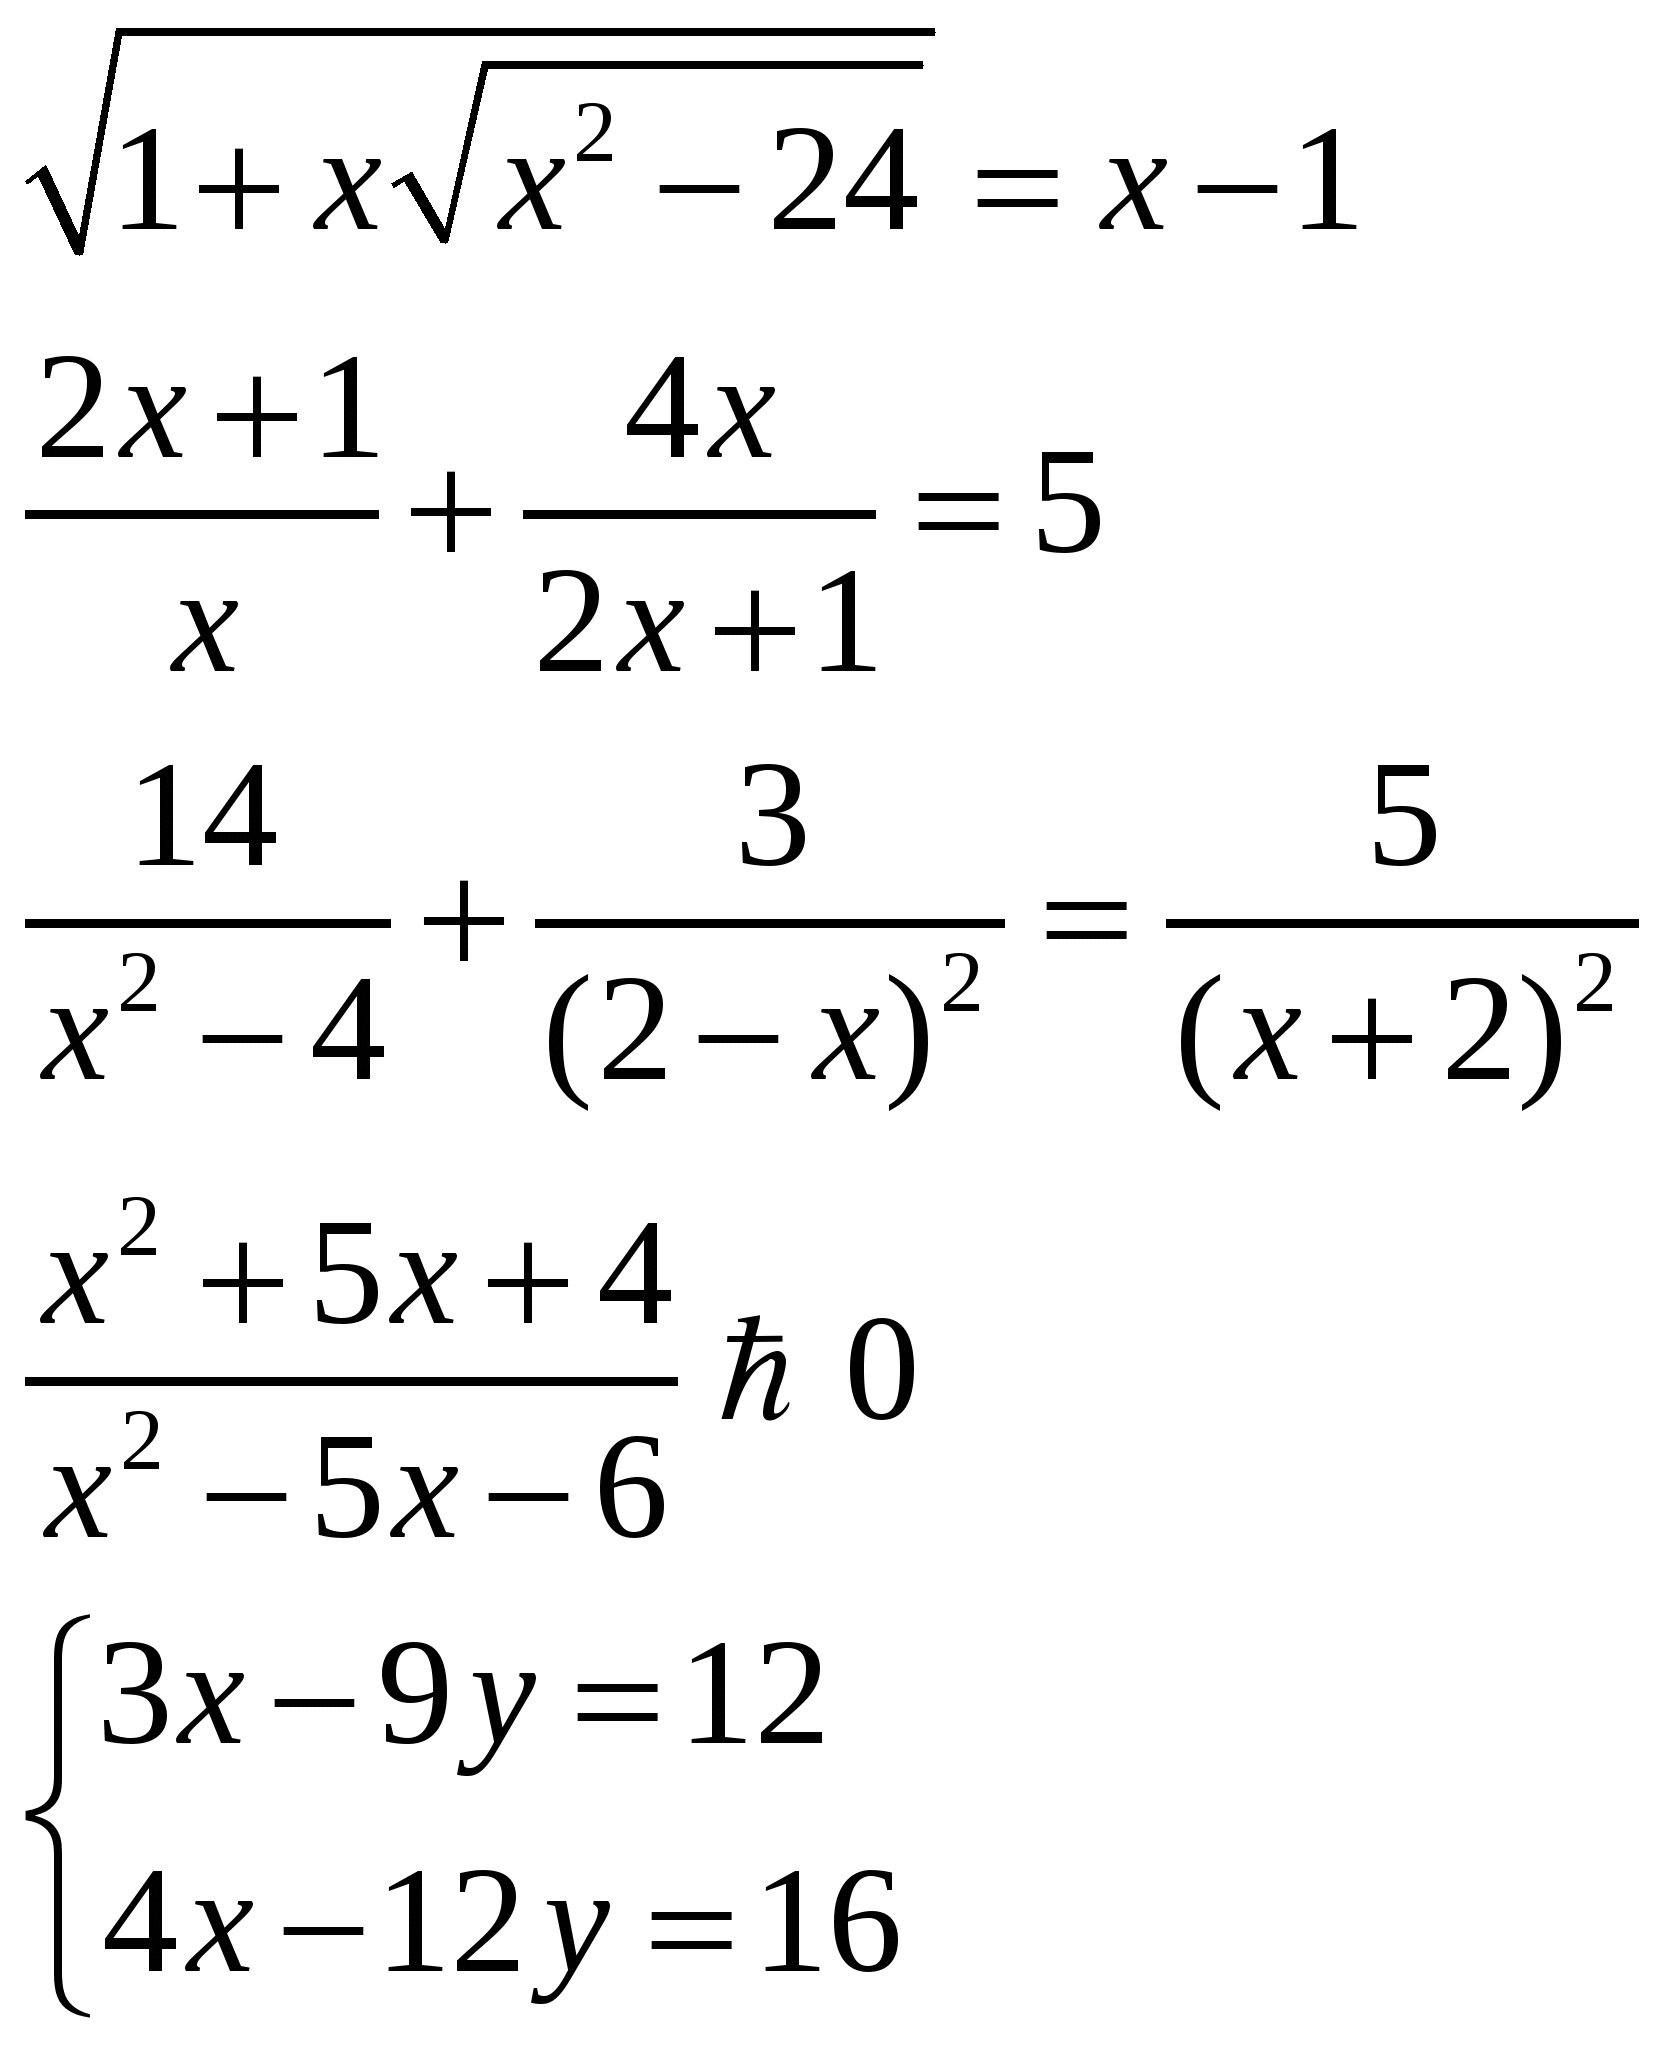 Задания для самостоятельной работы по алгебре для 9 класса по теме: Уравнения, неравенства и системы уравнений 4 варианта